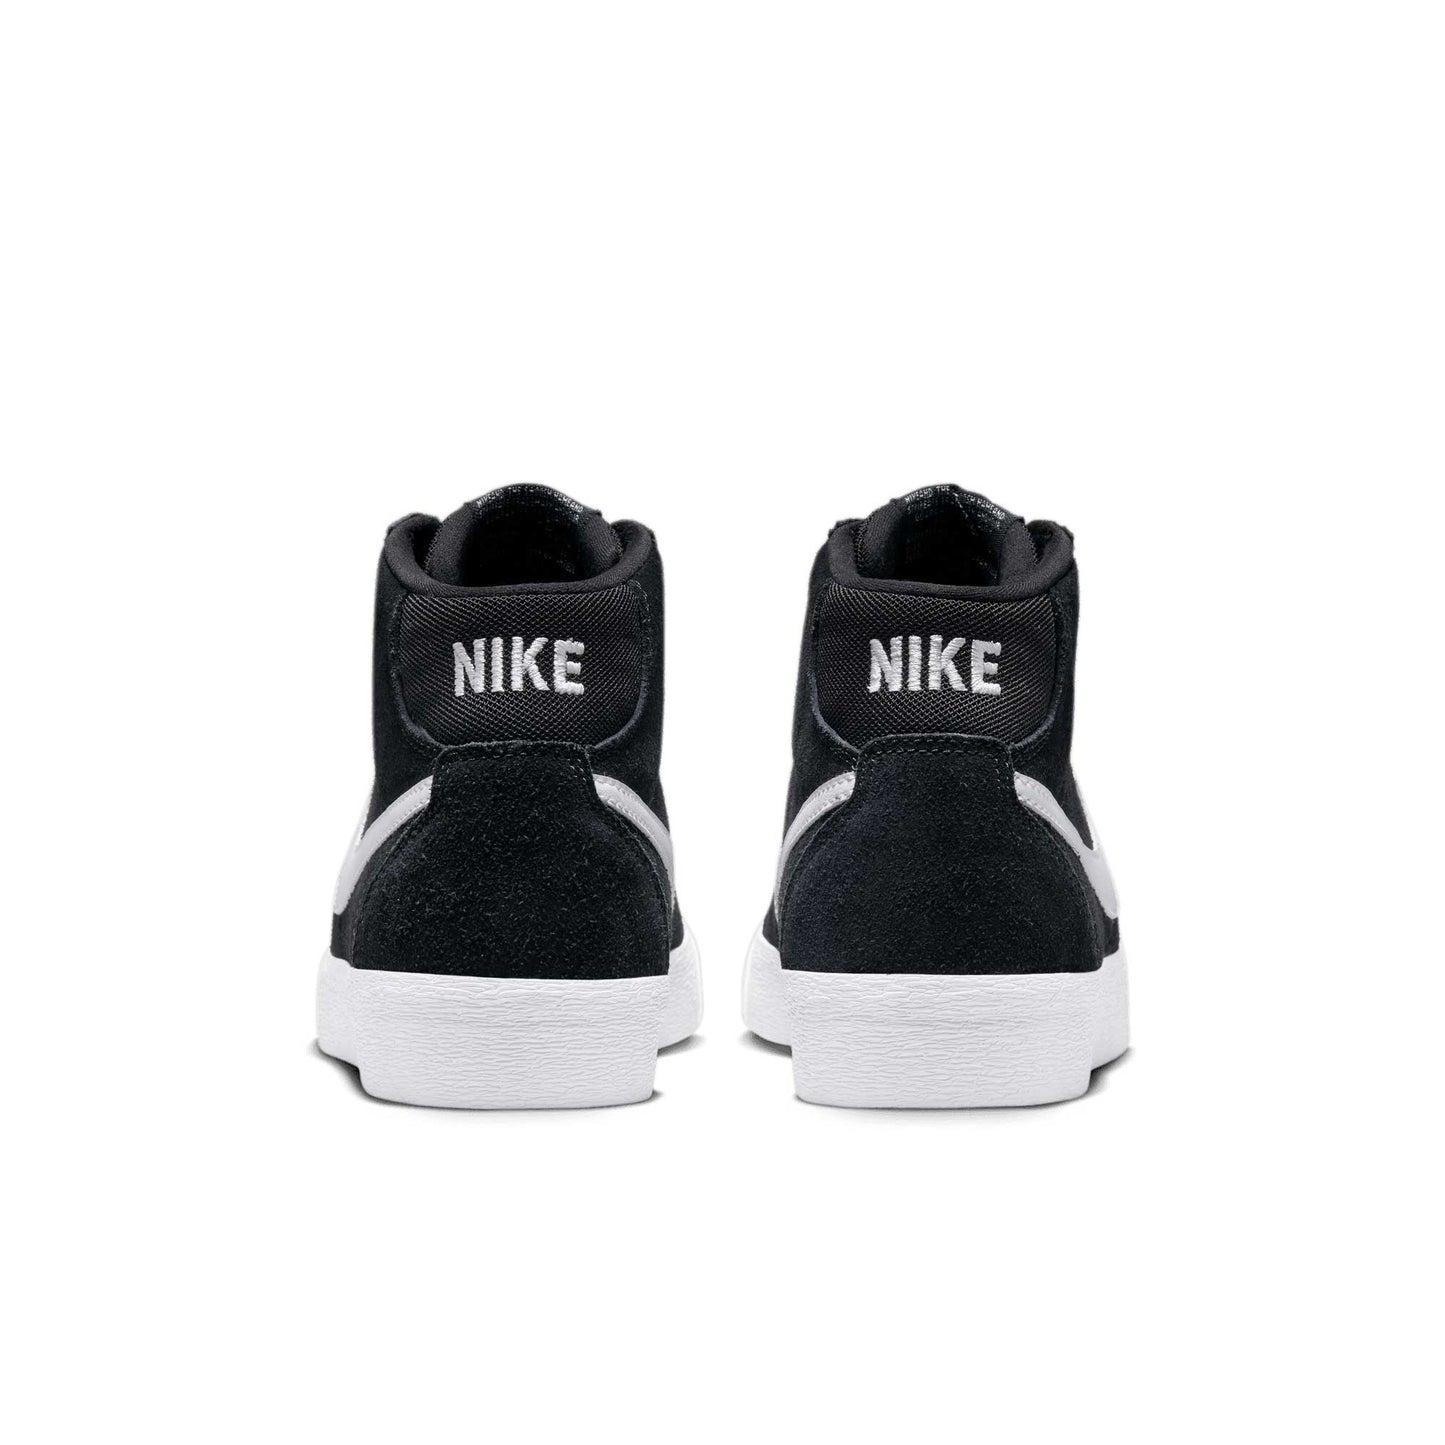 Nike SB Bruin High, black/white-black-gum light brown - Tiki Room Skateboards - 3